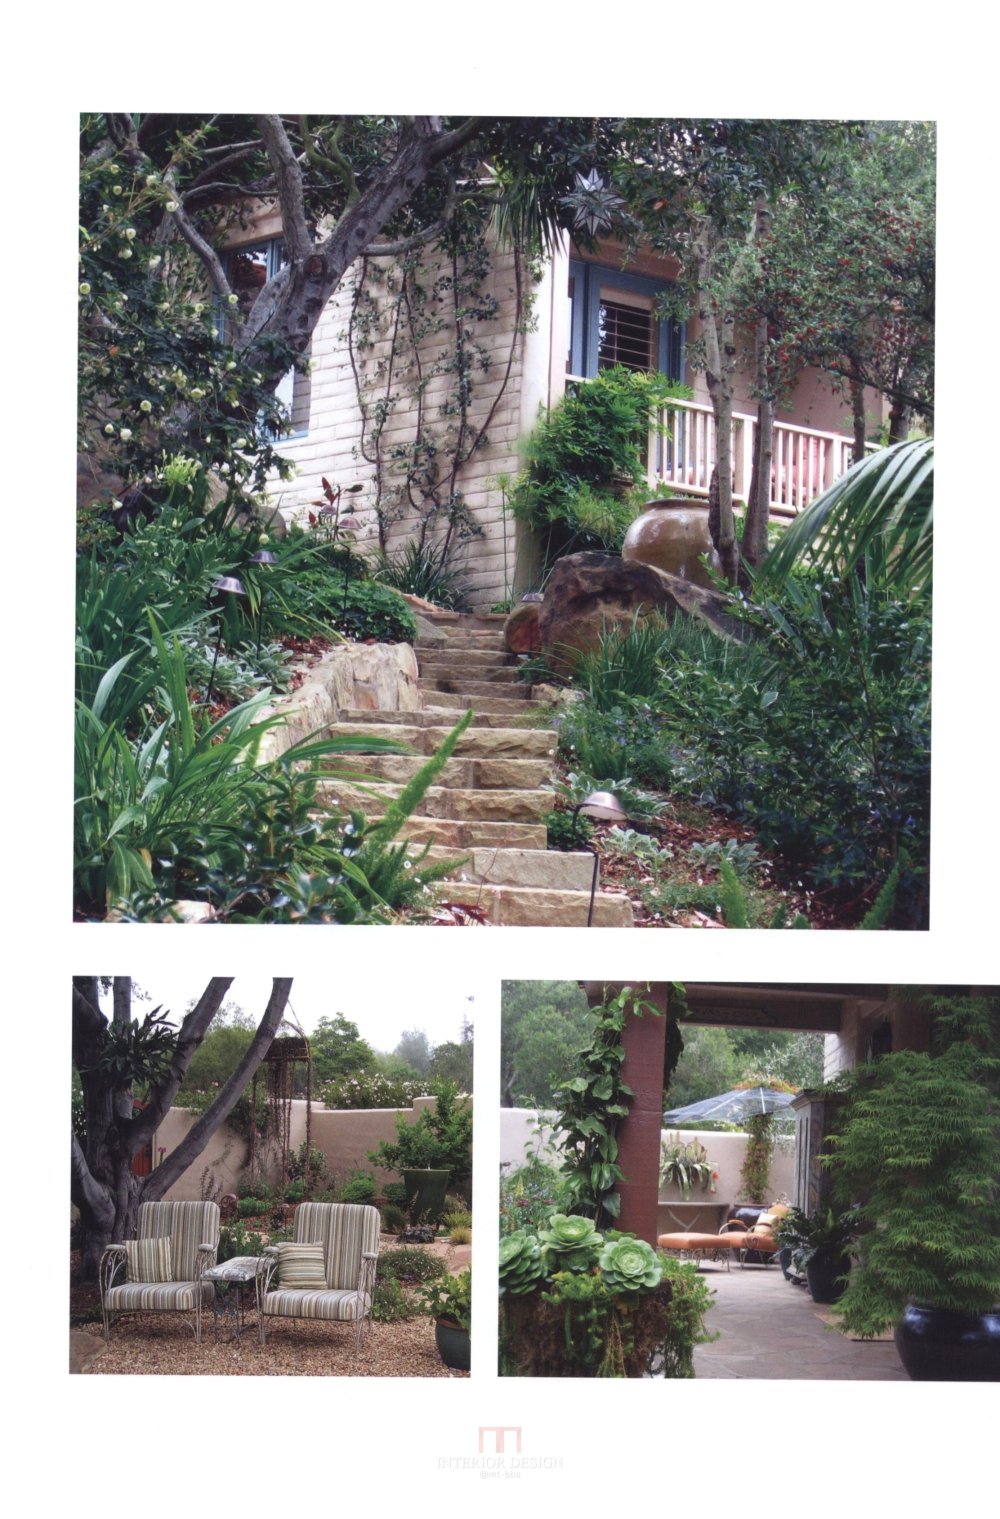 别墅庭园规划与设计Villa Garden Plan & Design_100.jpg